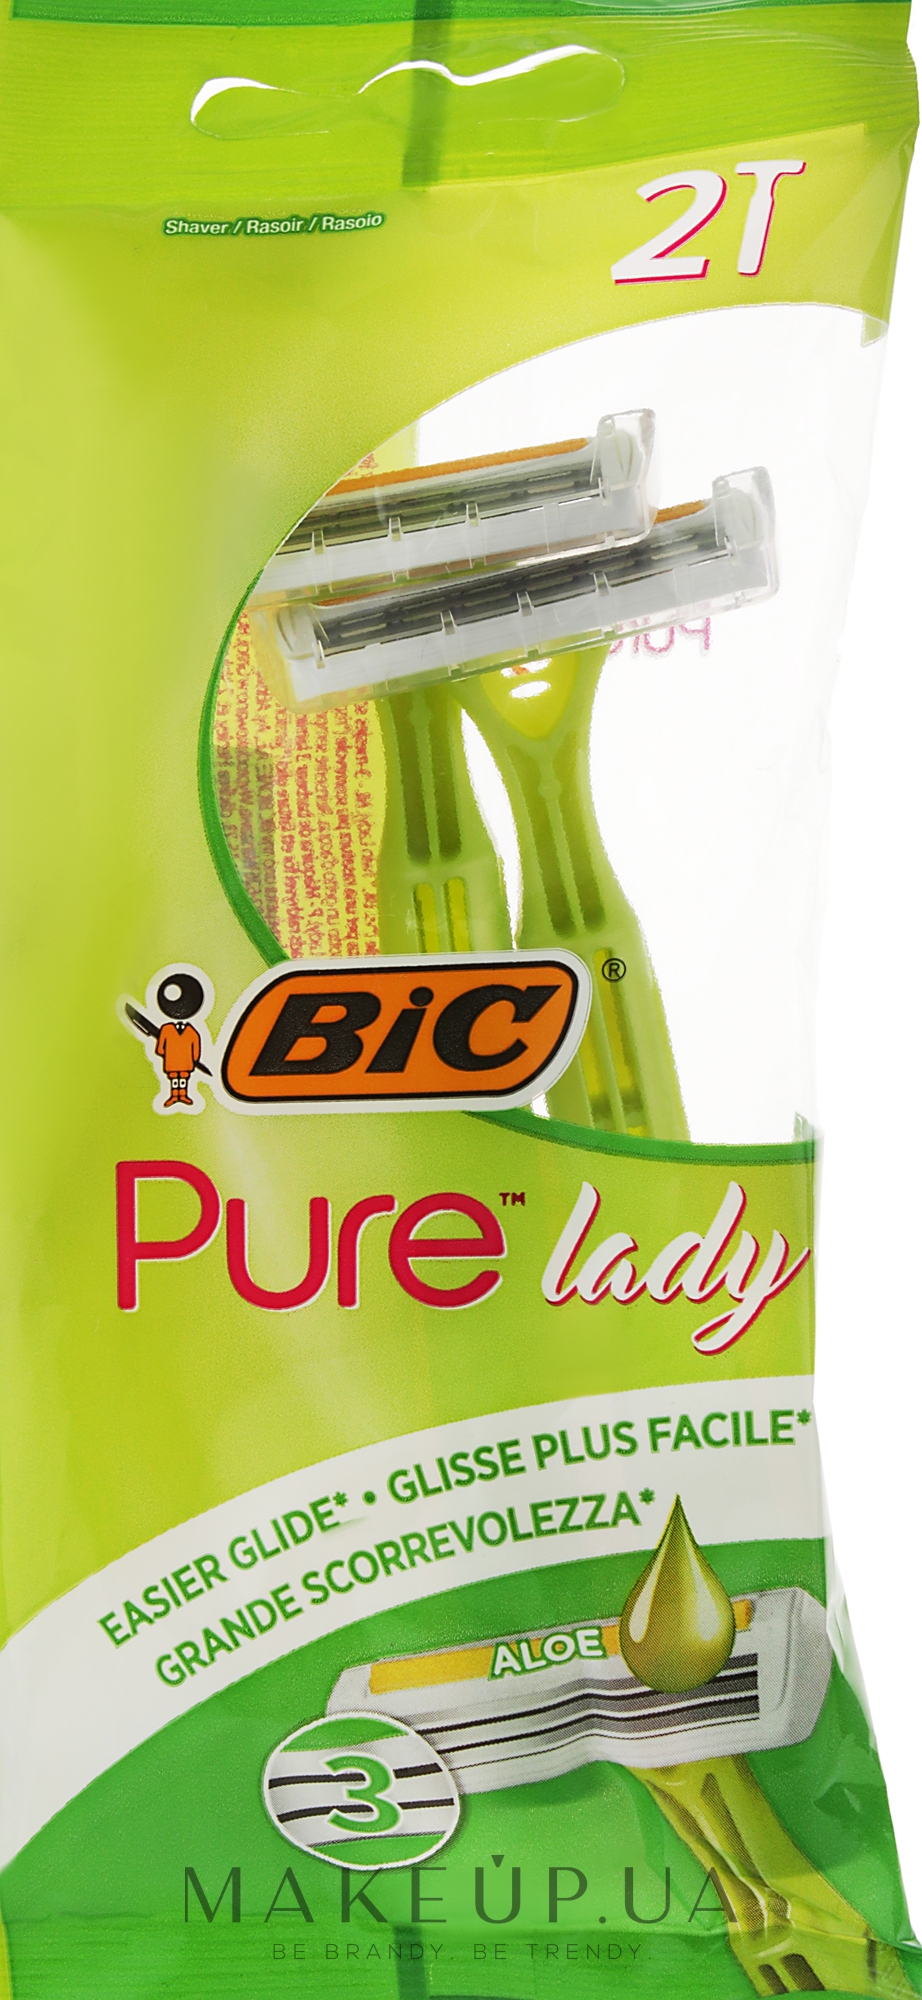 Жіночий станок для гоління "Pure 3 Lady", 2 шт. - Bic — фото 2шт